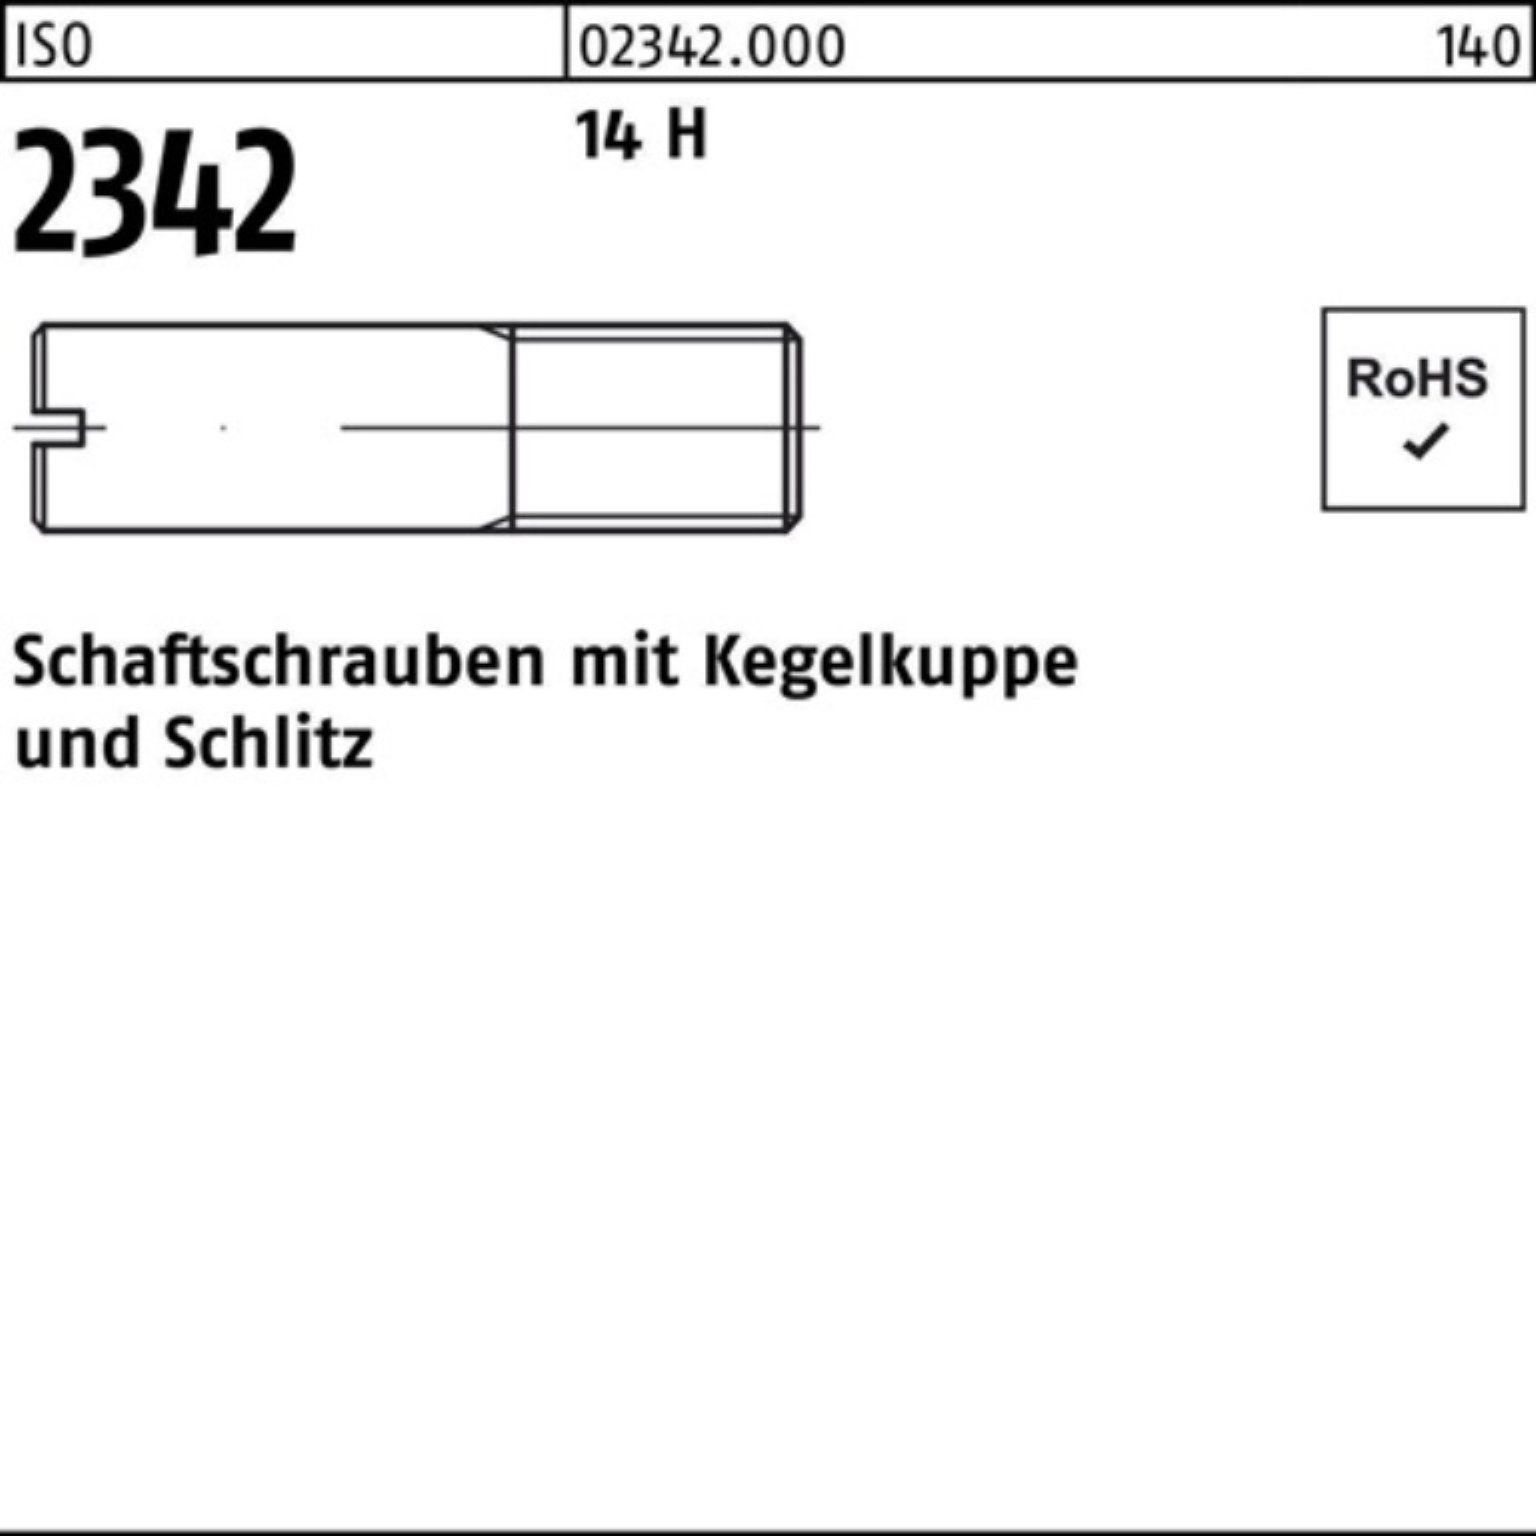 Reyher Schraube 100er Pack Schaftschraube ISO 2342 Kegelkuppe/Schlitz M12x 40 14 H 50